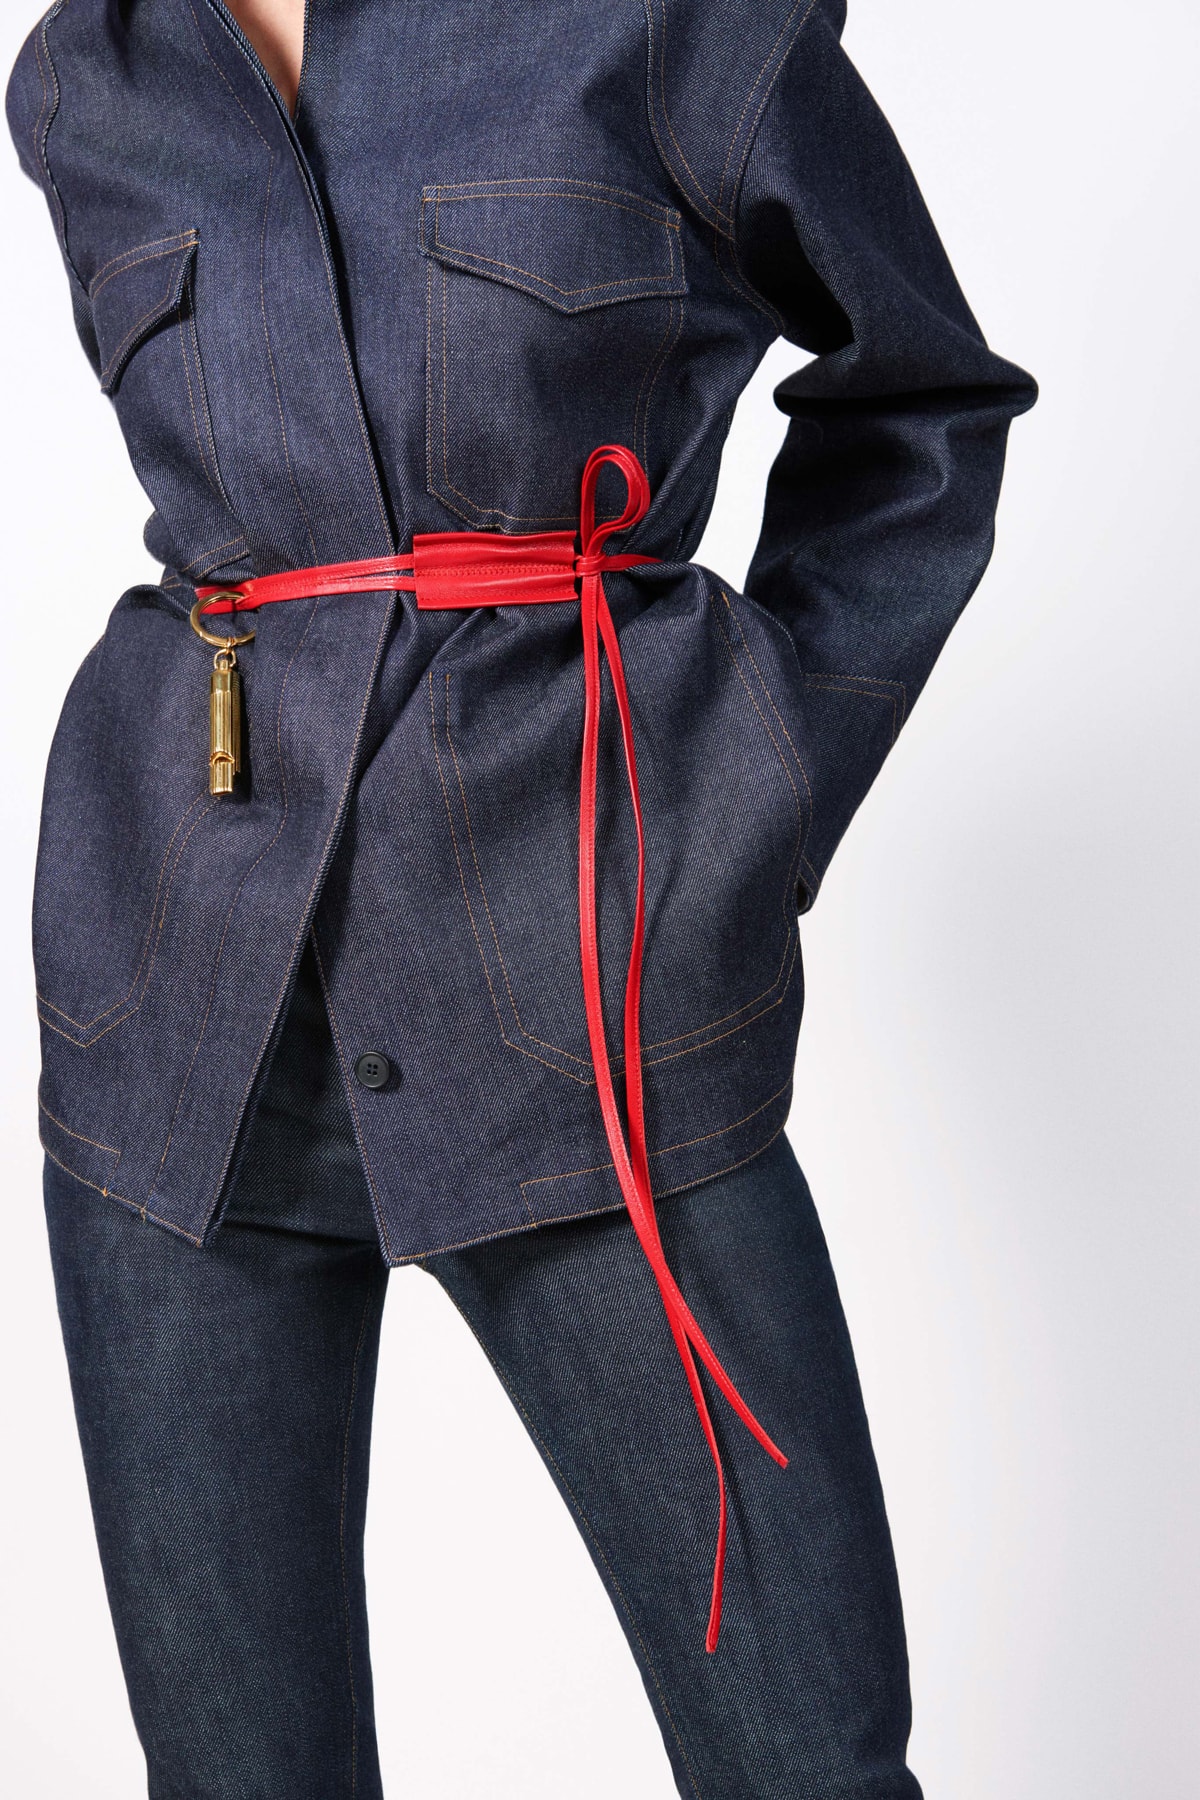 Victoria Beckham Resort 2019 Collection Lookbook Denim Jacket Jeans Leather Belt Red Gold